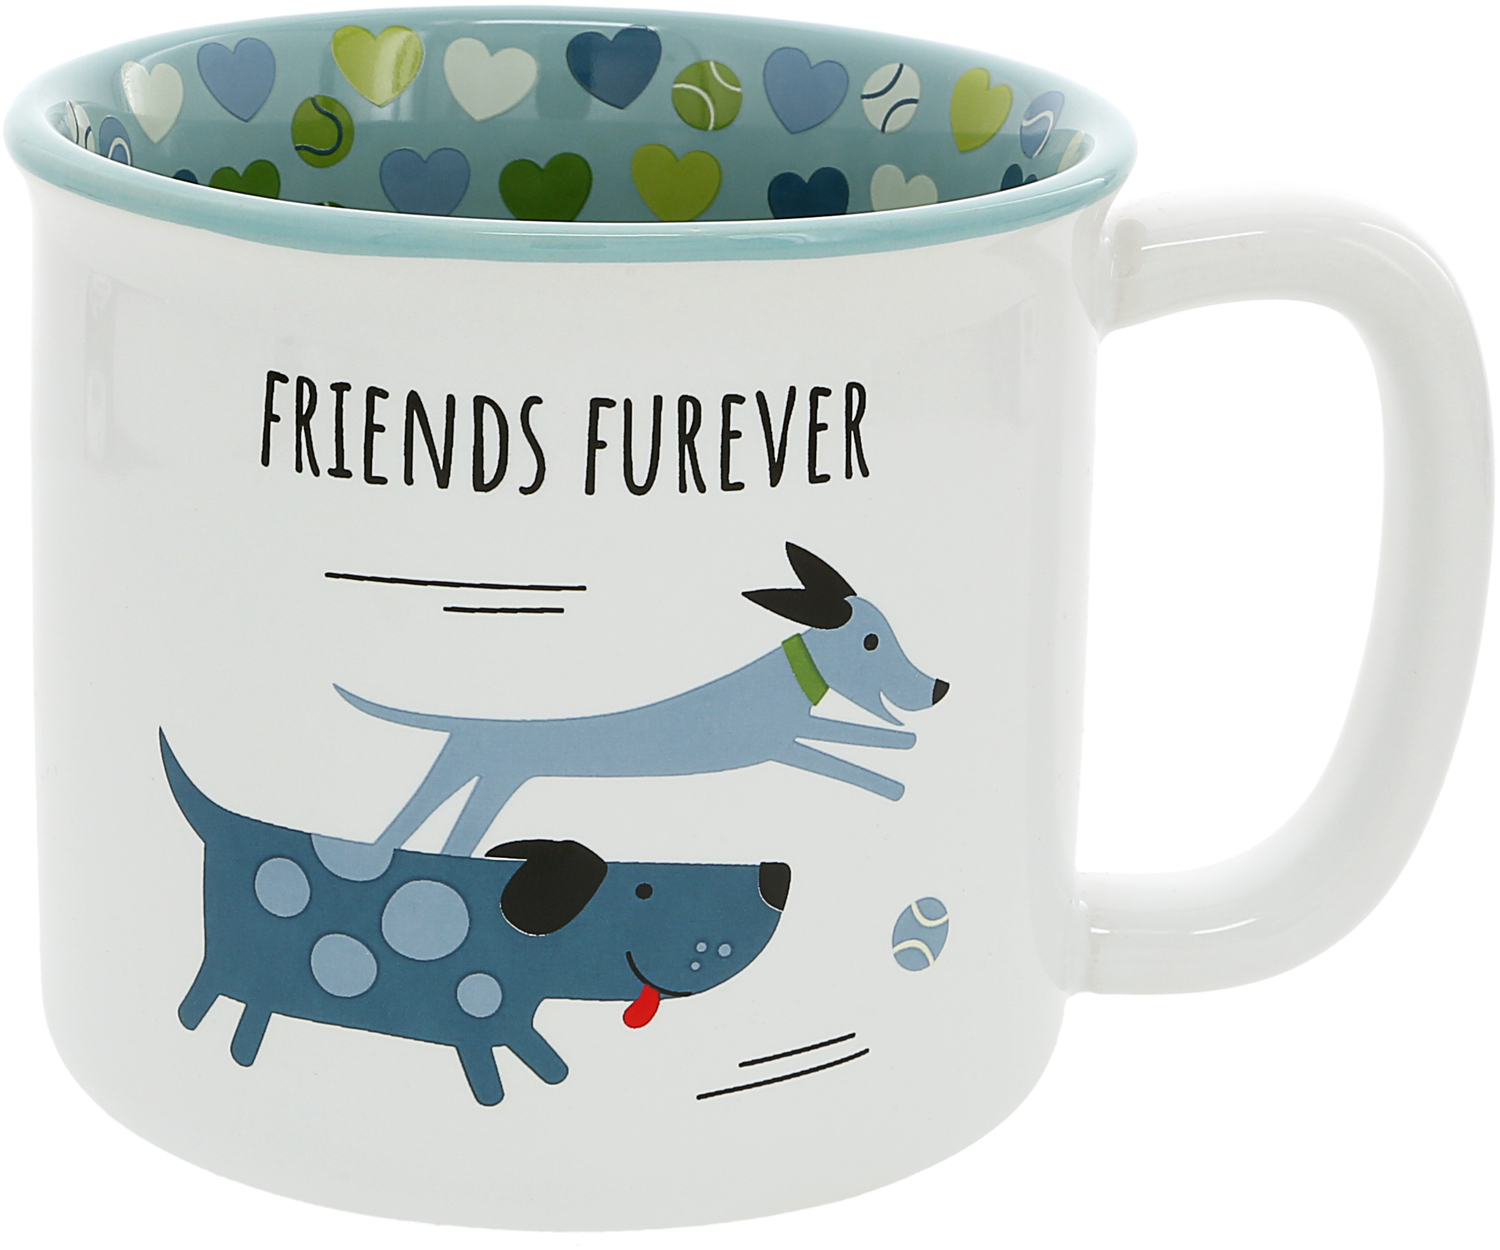 Friends Furever by Pawsome Pals - Friends Furever - 18 oz Mug